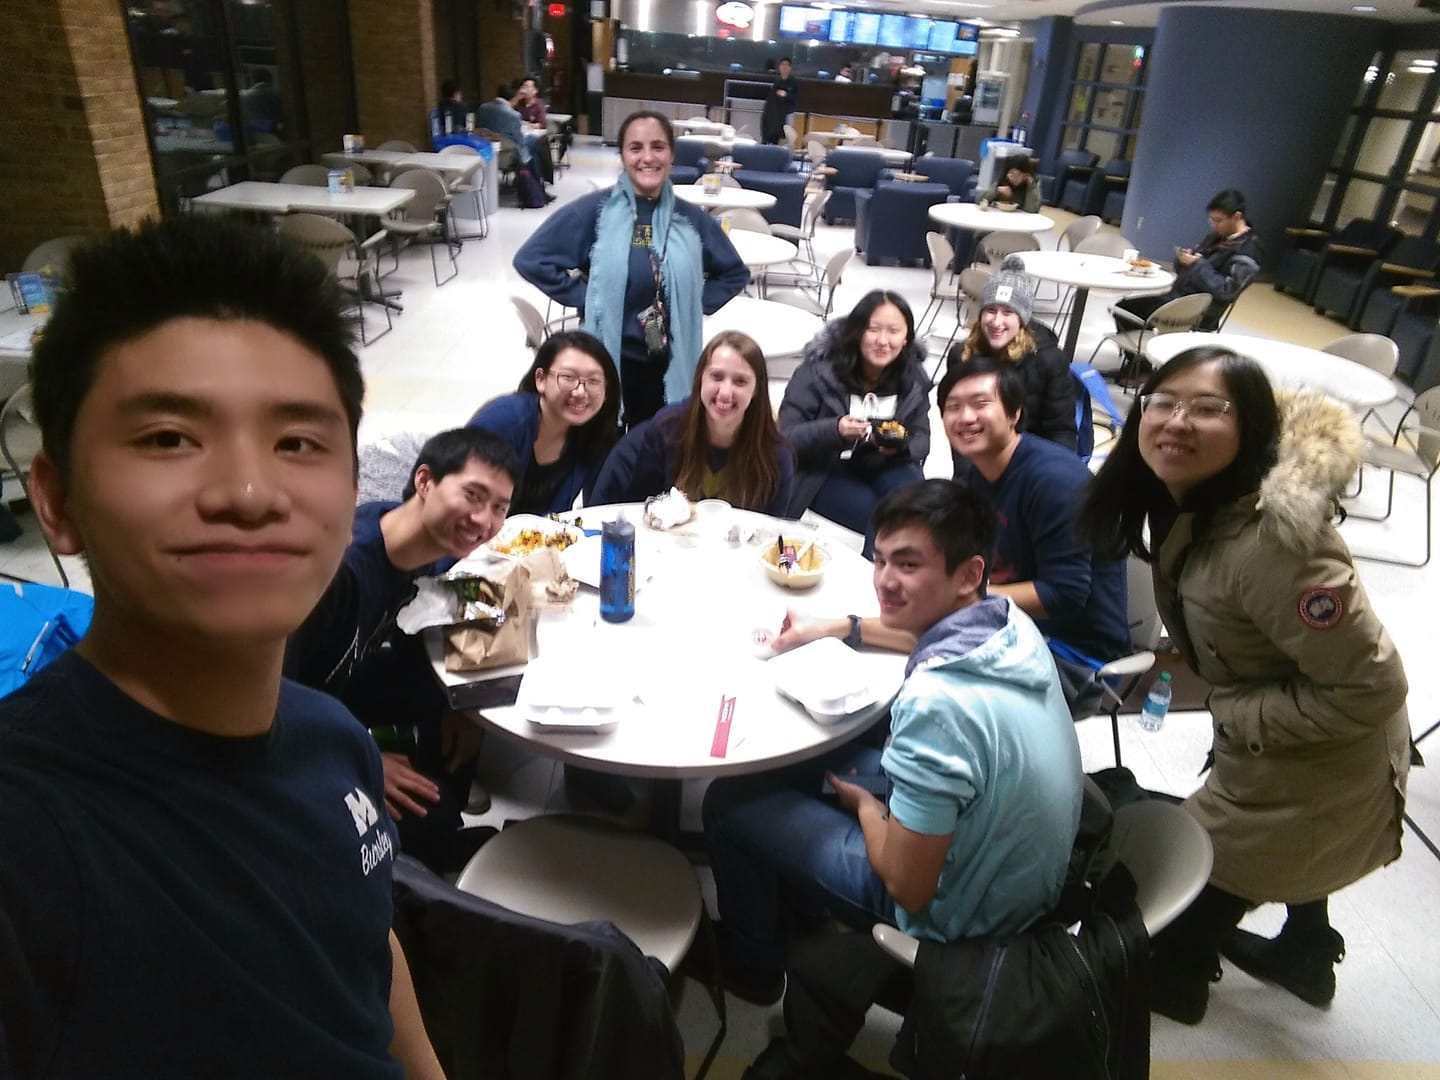 Derek Chen and friends selfie at lunch